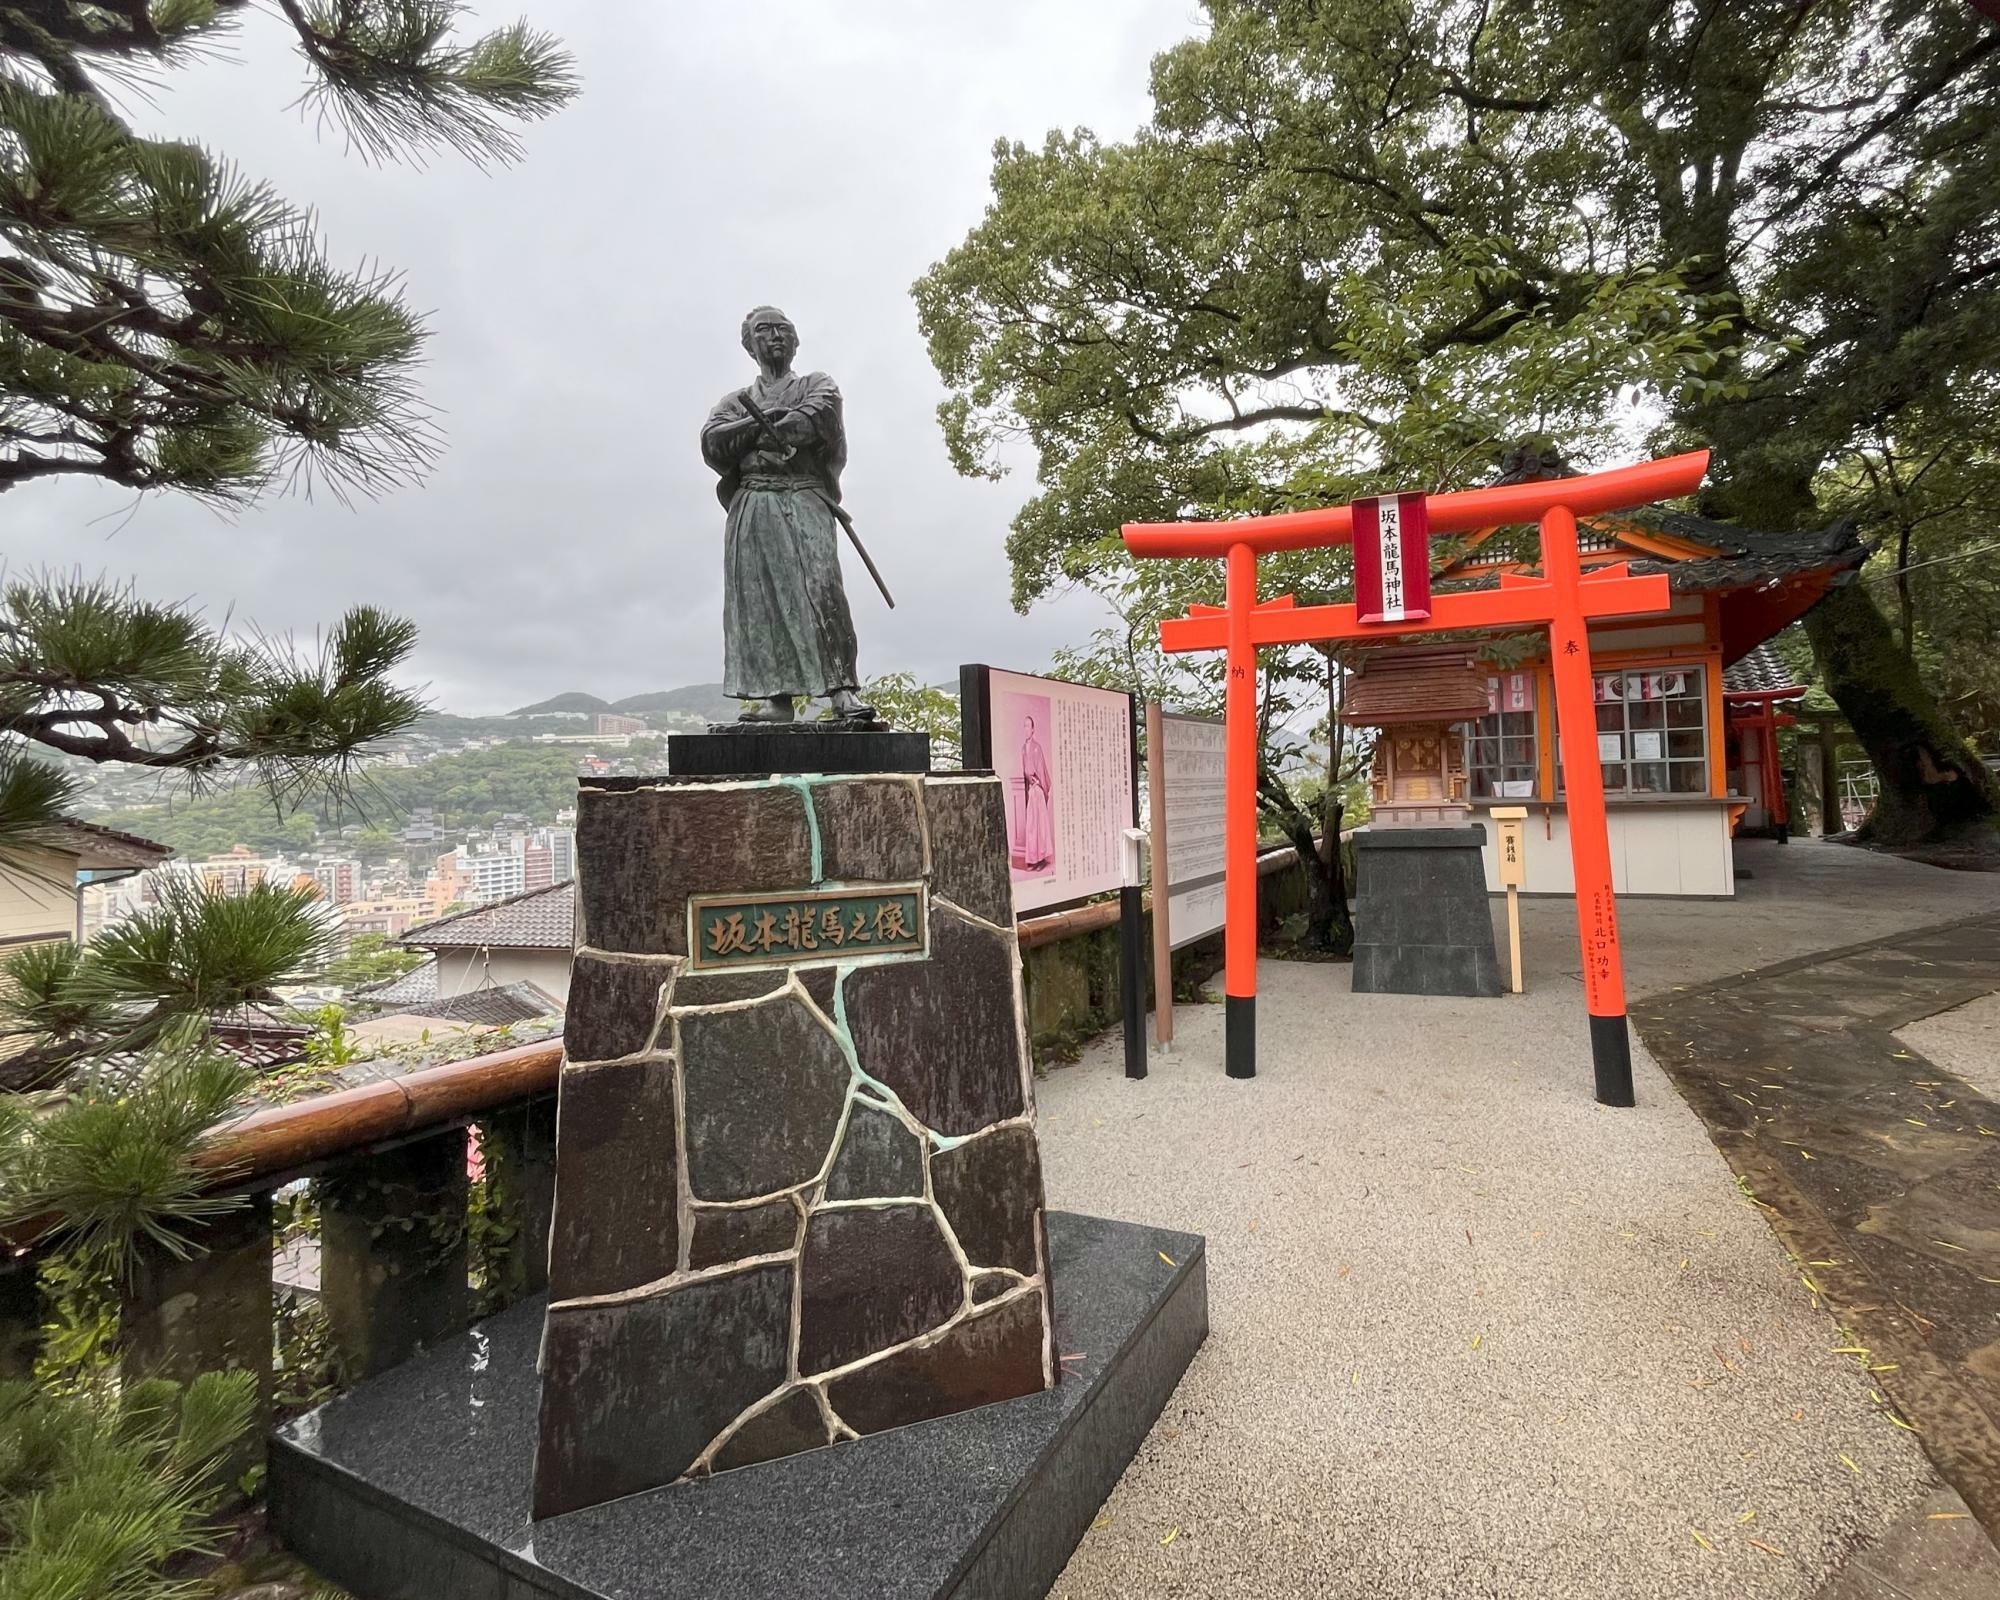 坂本龍馬神社と龍馬之像。龍馬像は、風頭公園に立つ像の原型。